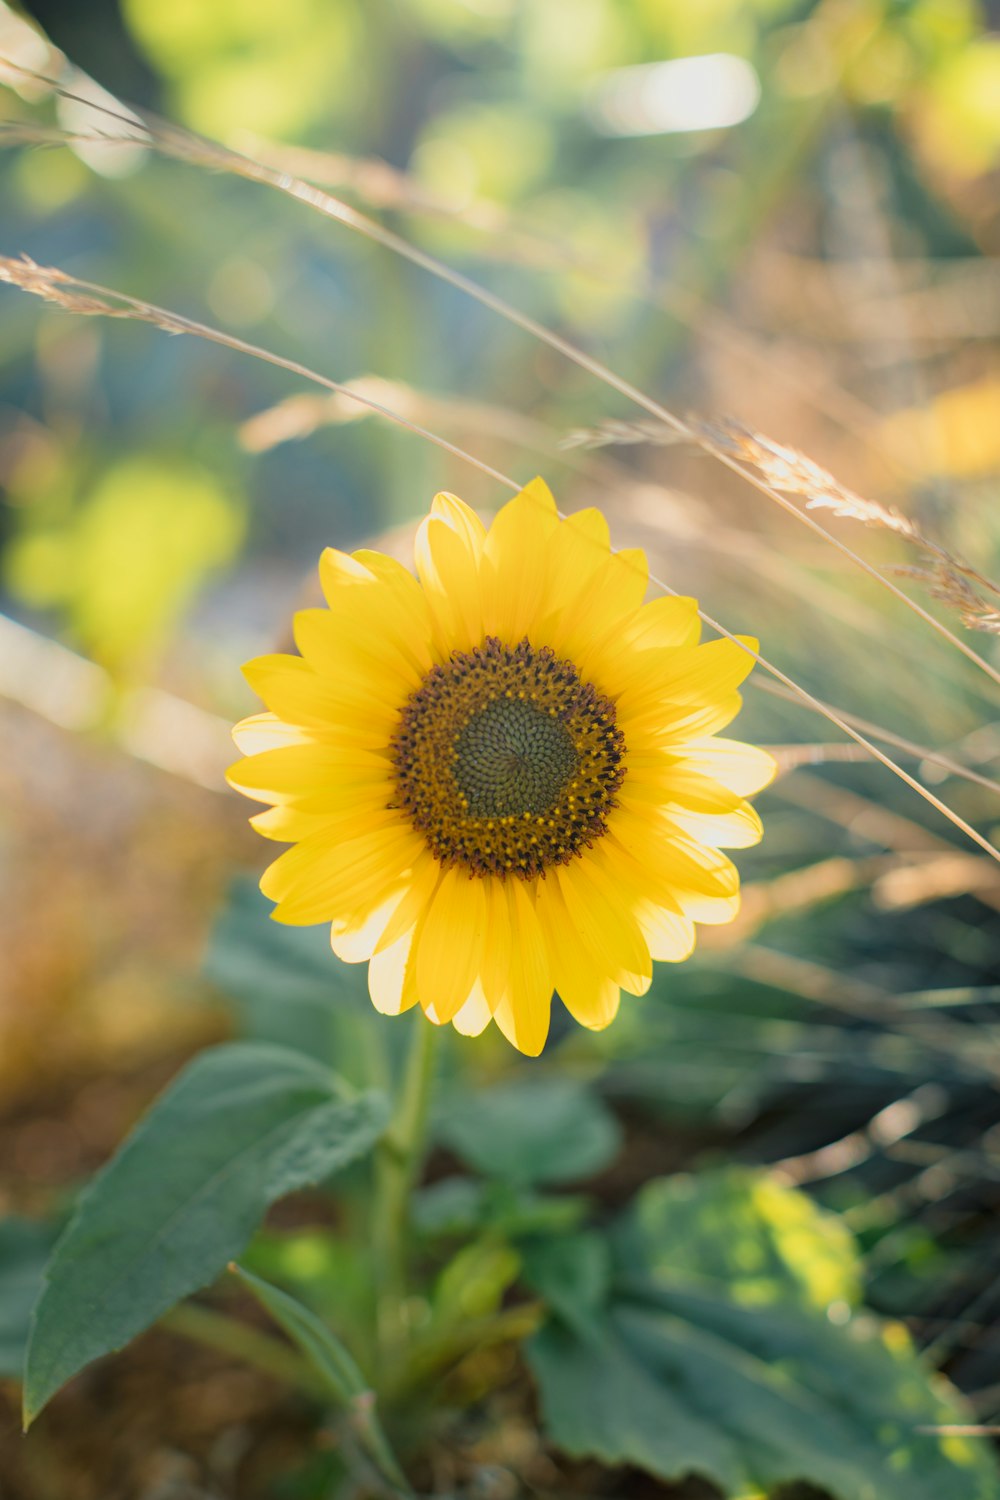 a sunflower in a field of tall grass